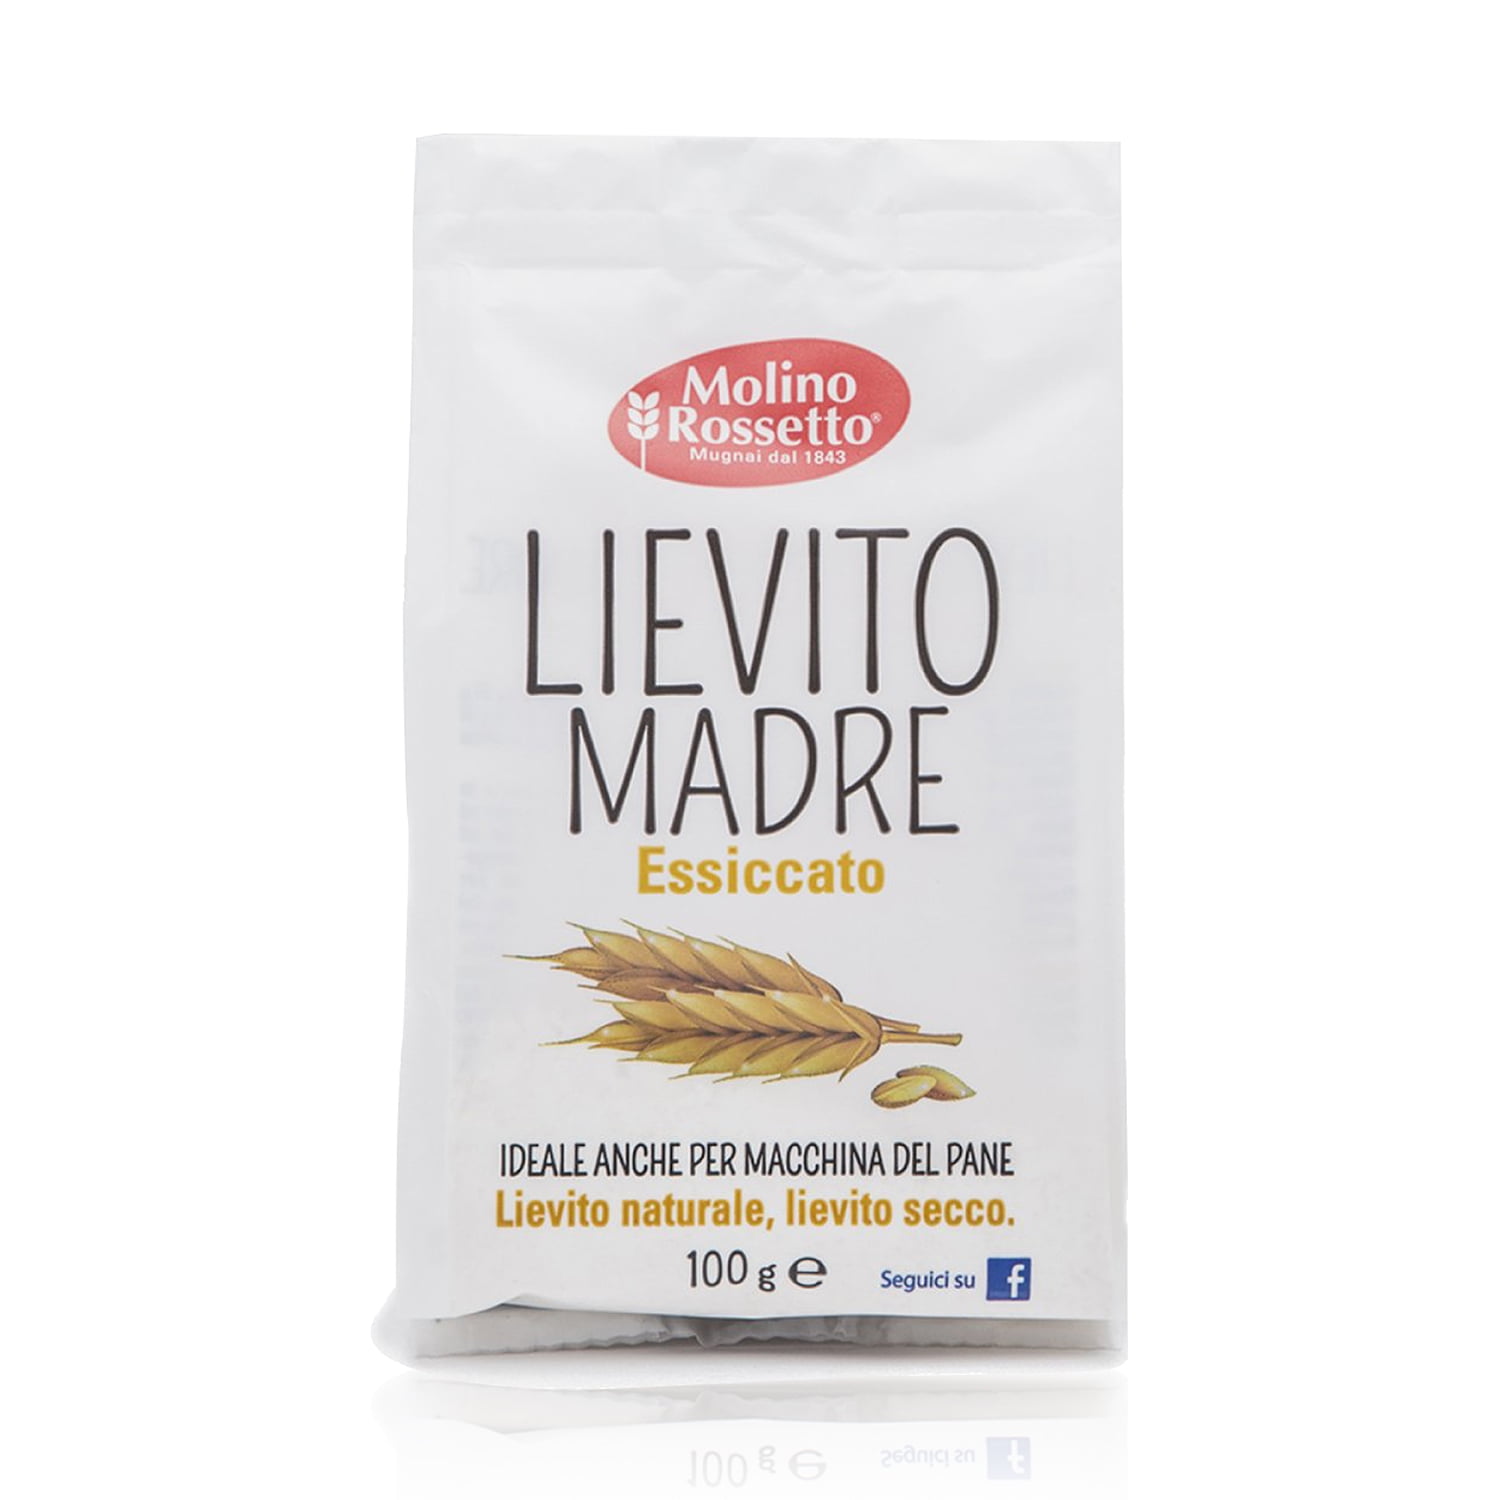 Molino Rossetto Lievito Madre Essiccato - Italian Dried Mother Yeast 